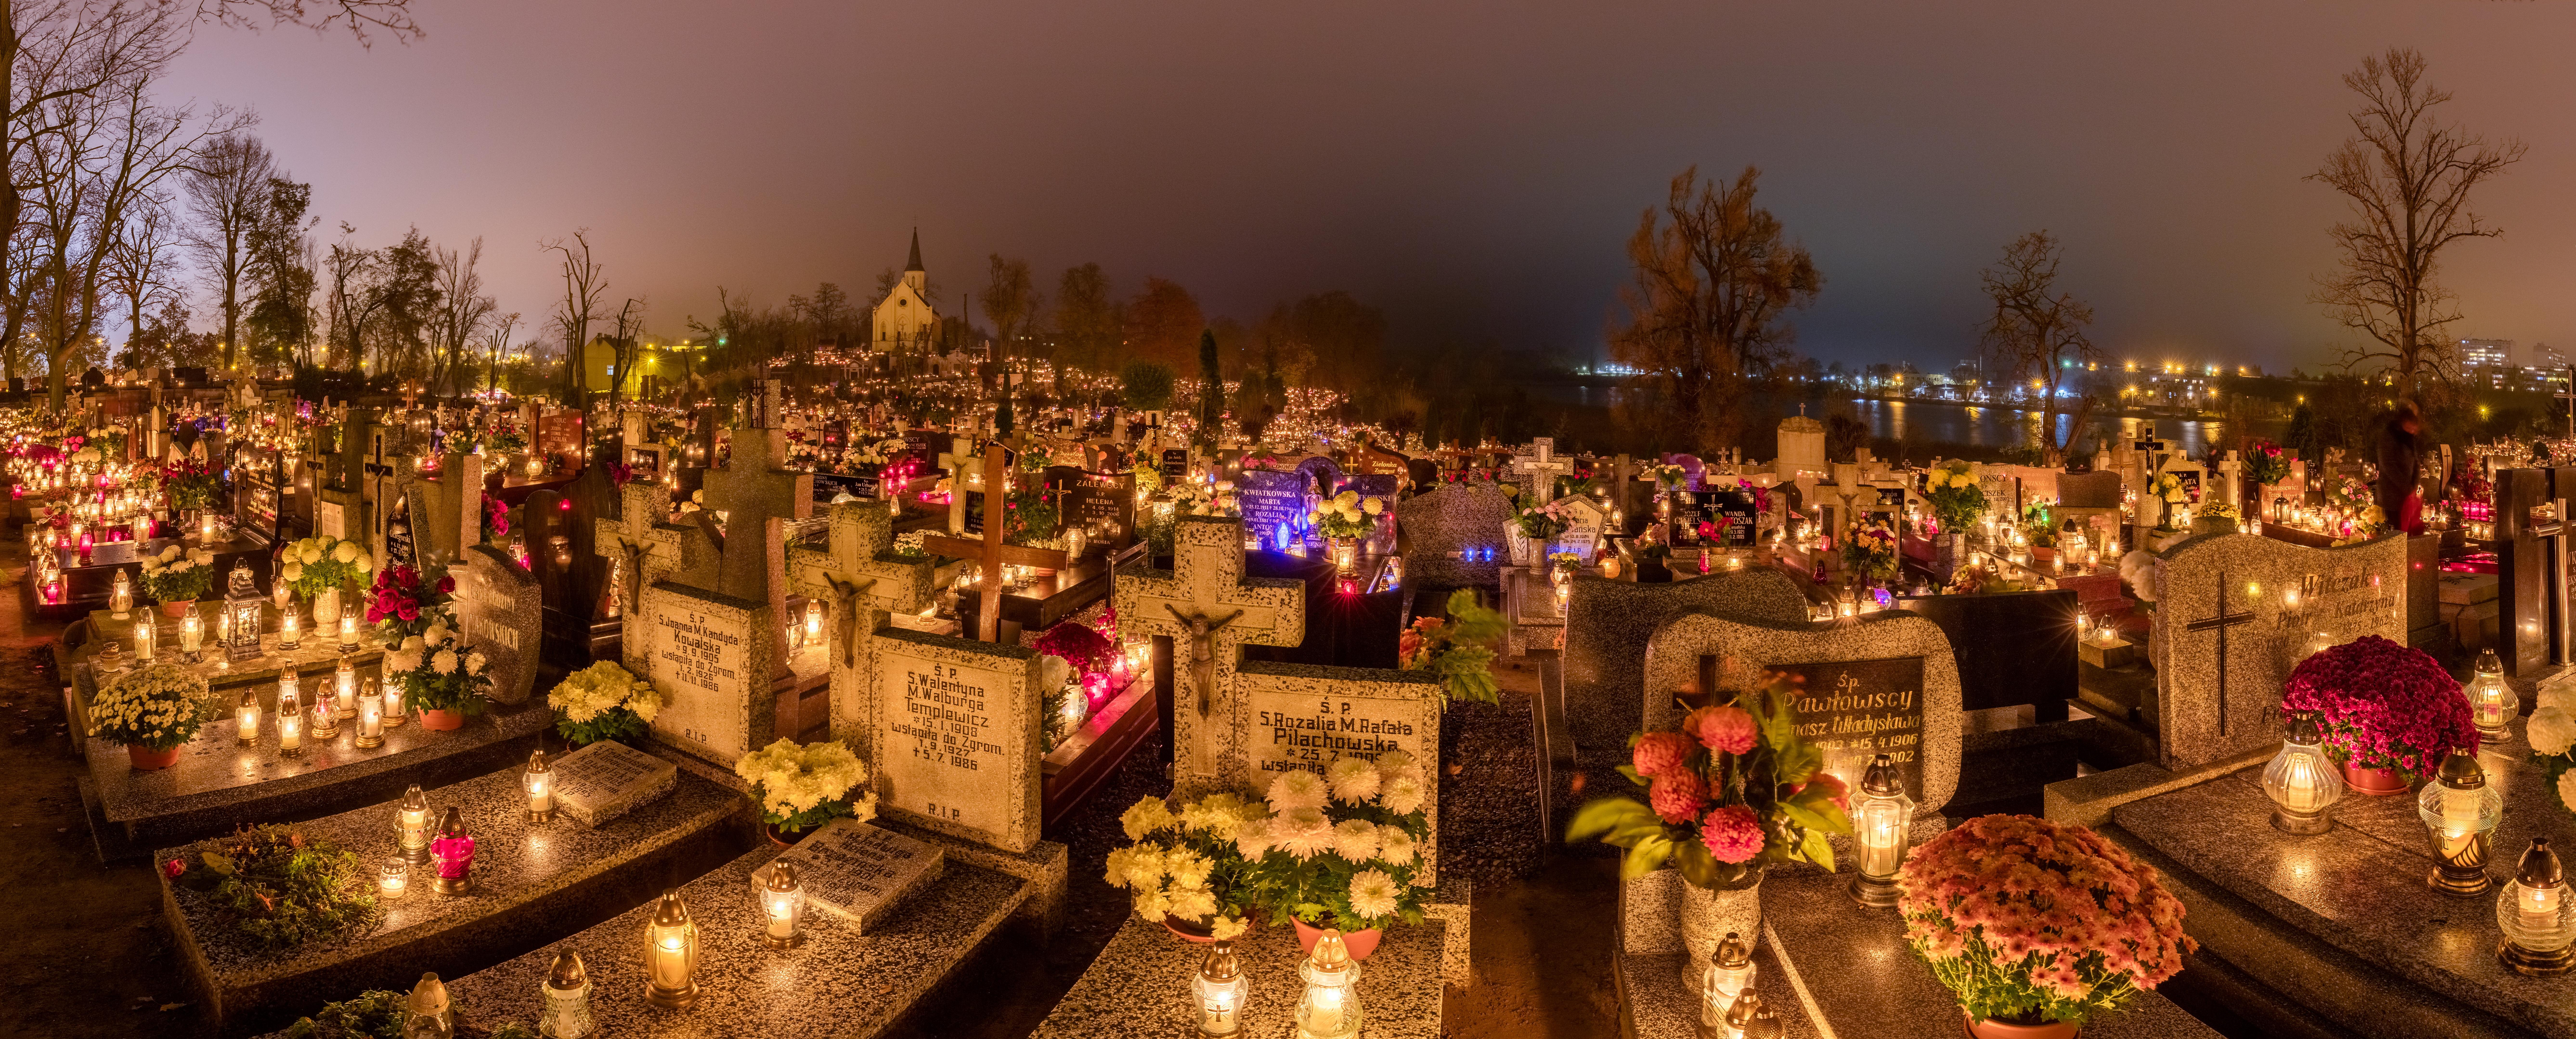 Picha:Celebración de Todos los Santos, cementerio de la